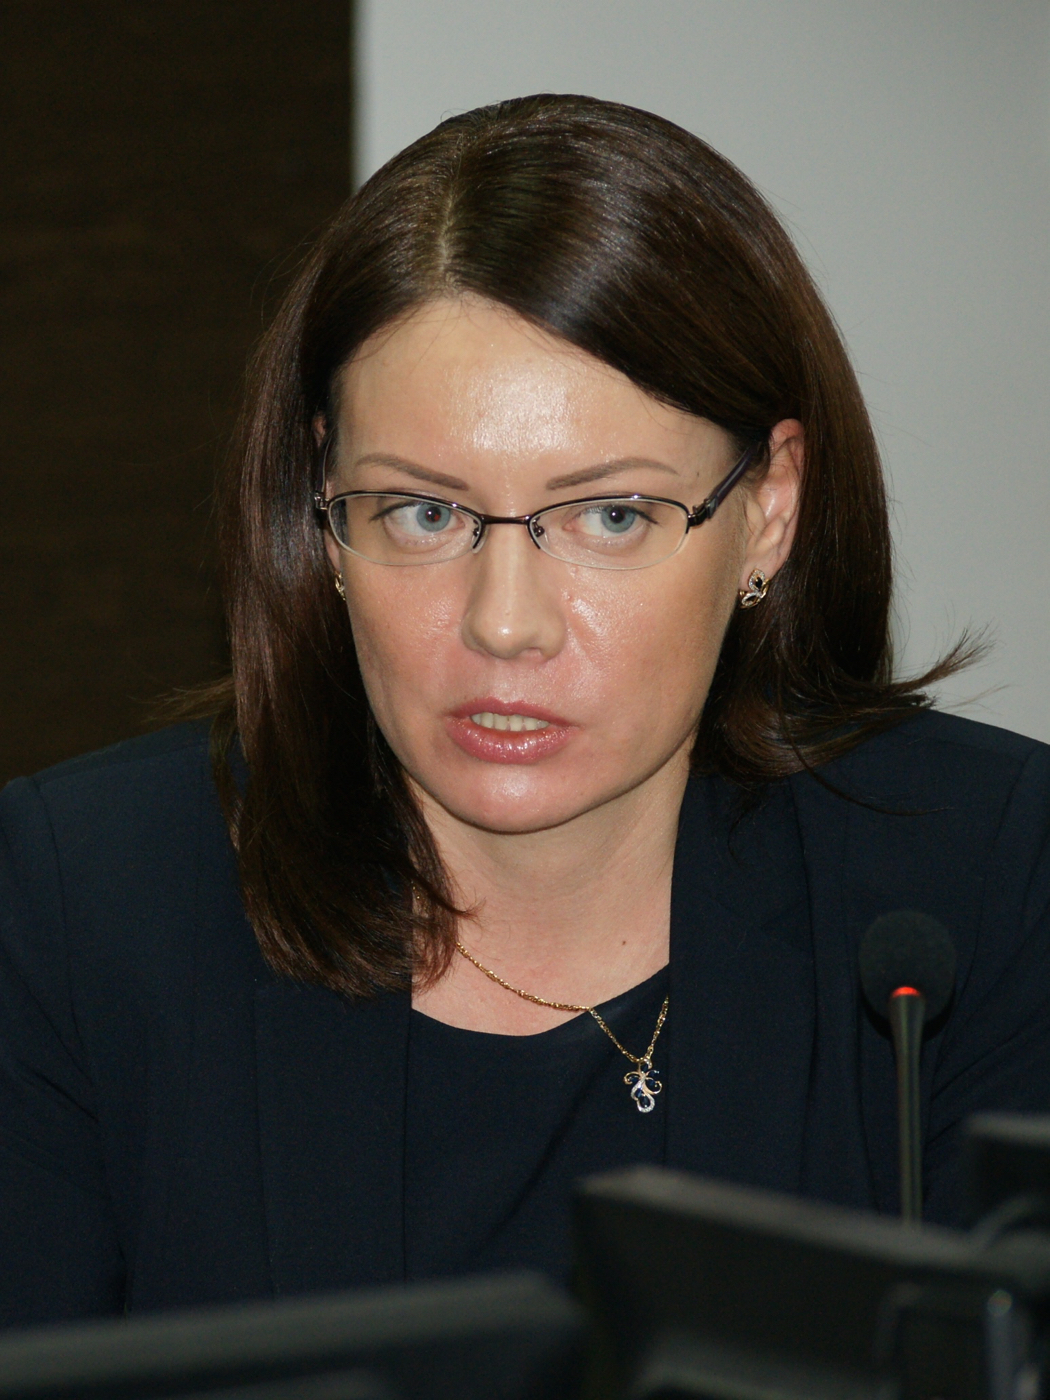 Александра Федоровна Питкянен — исполнительный директор Фонда Содействия кредитованию малого бизнеса